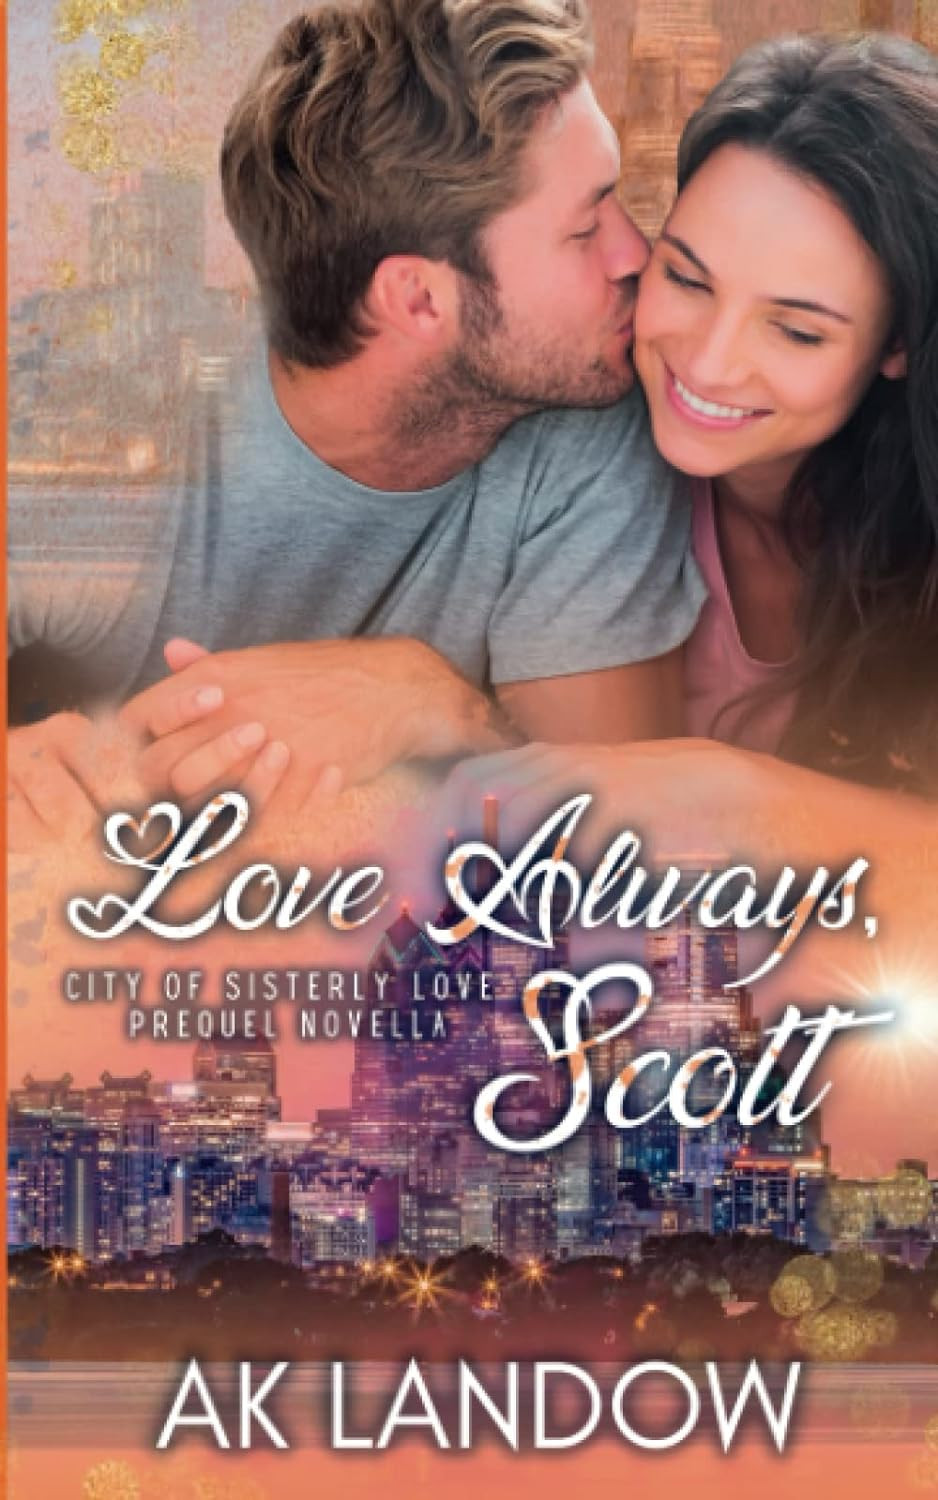 Love Always, Scott